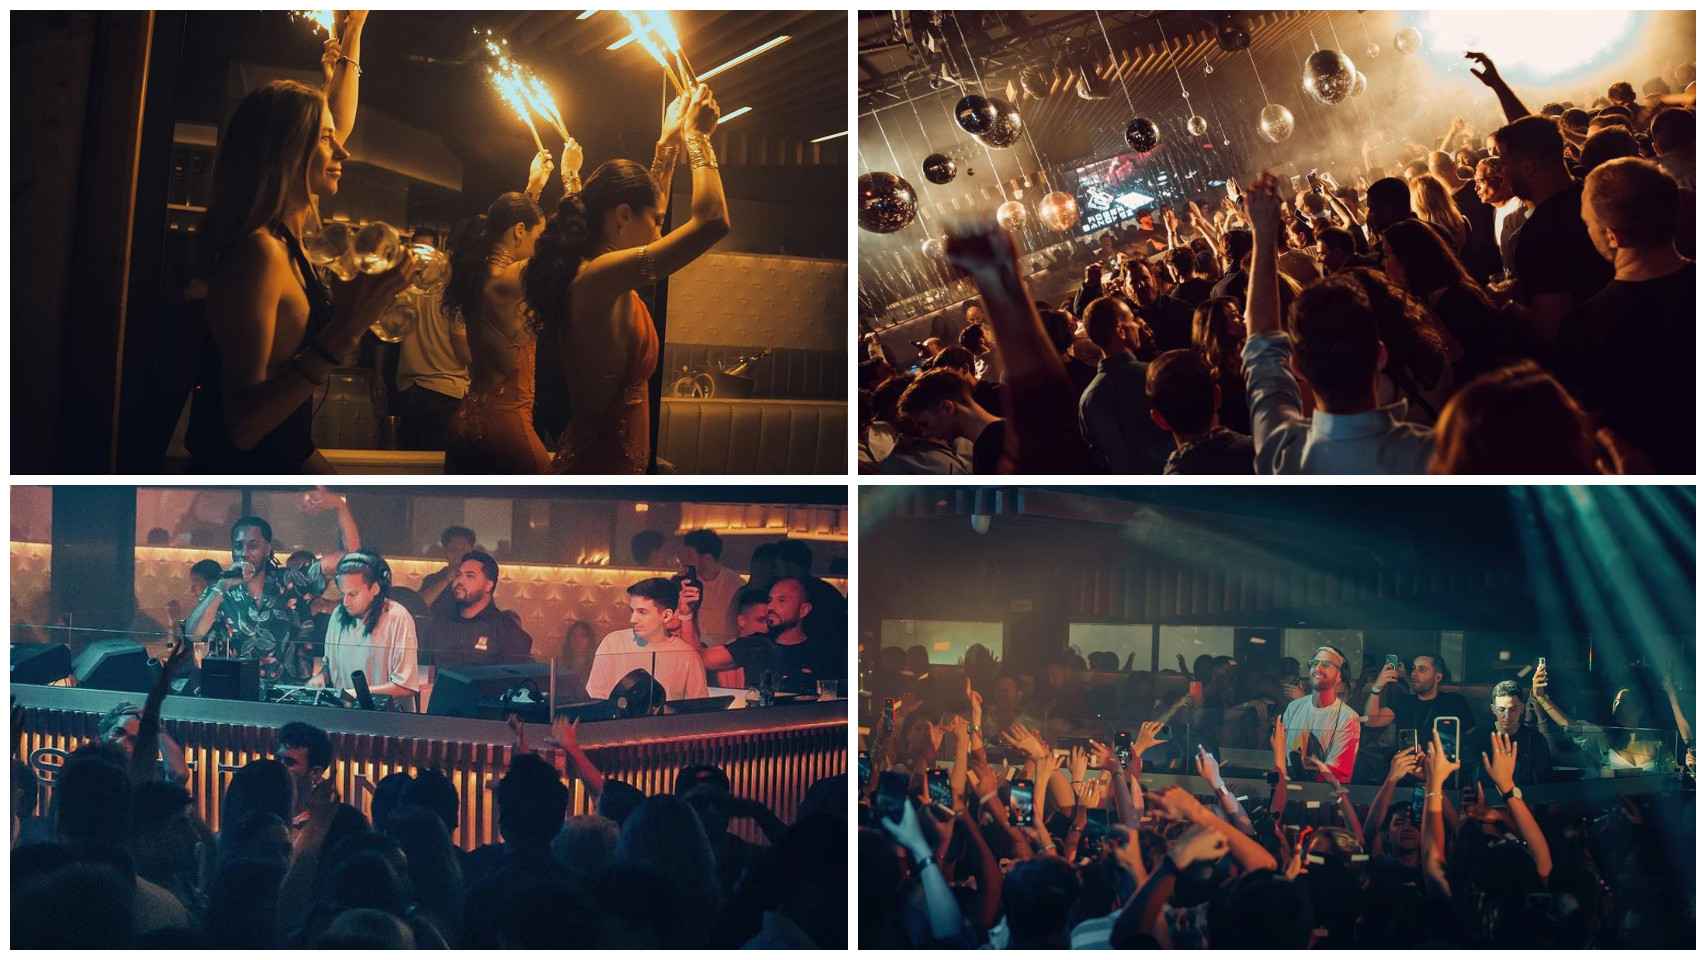 Imágenes de la discoteca Sutton, en Barcelona.